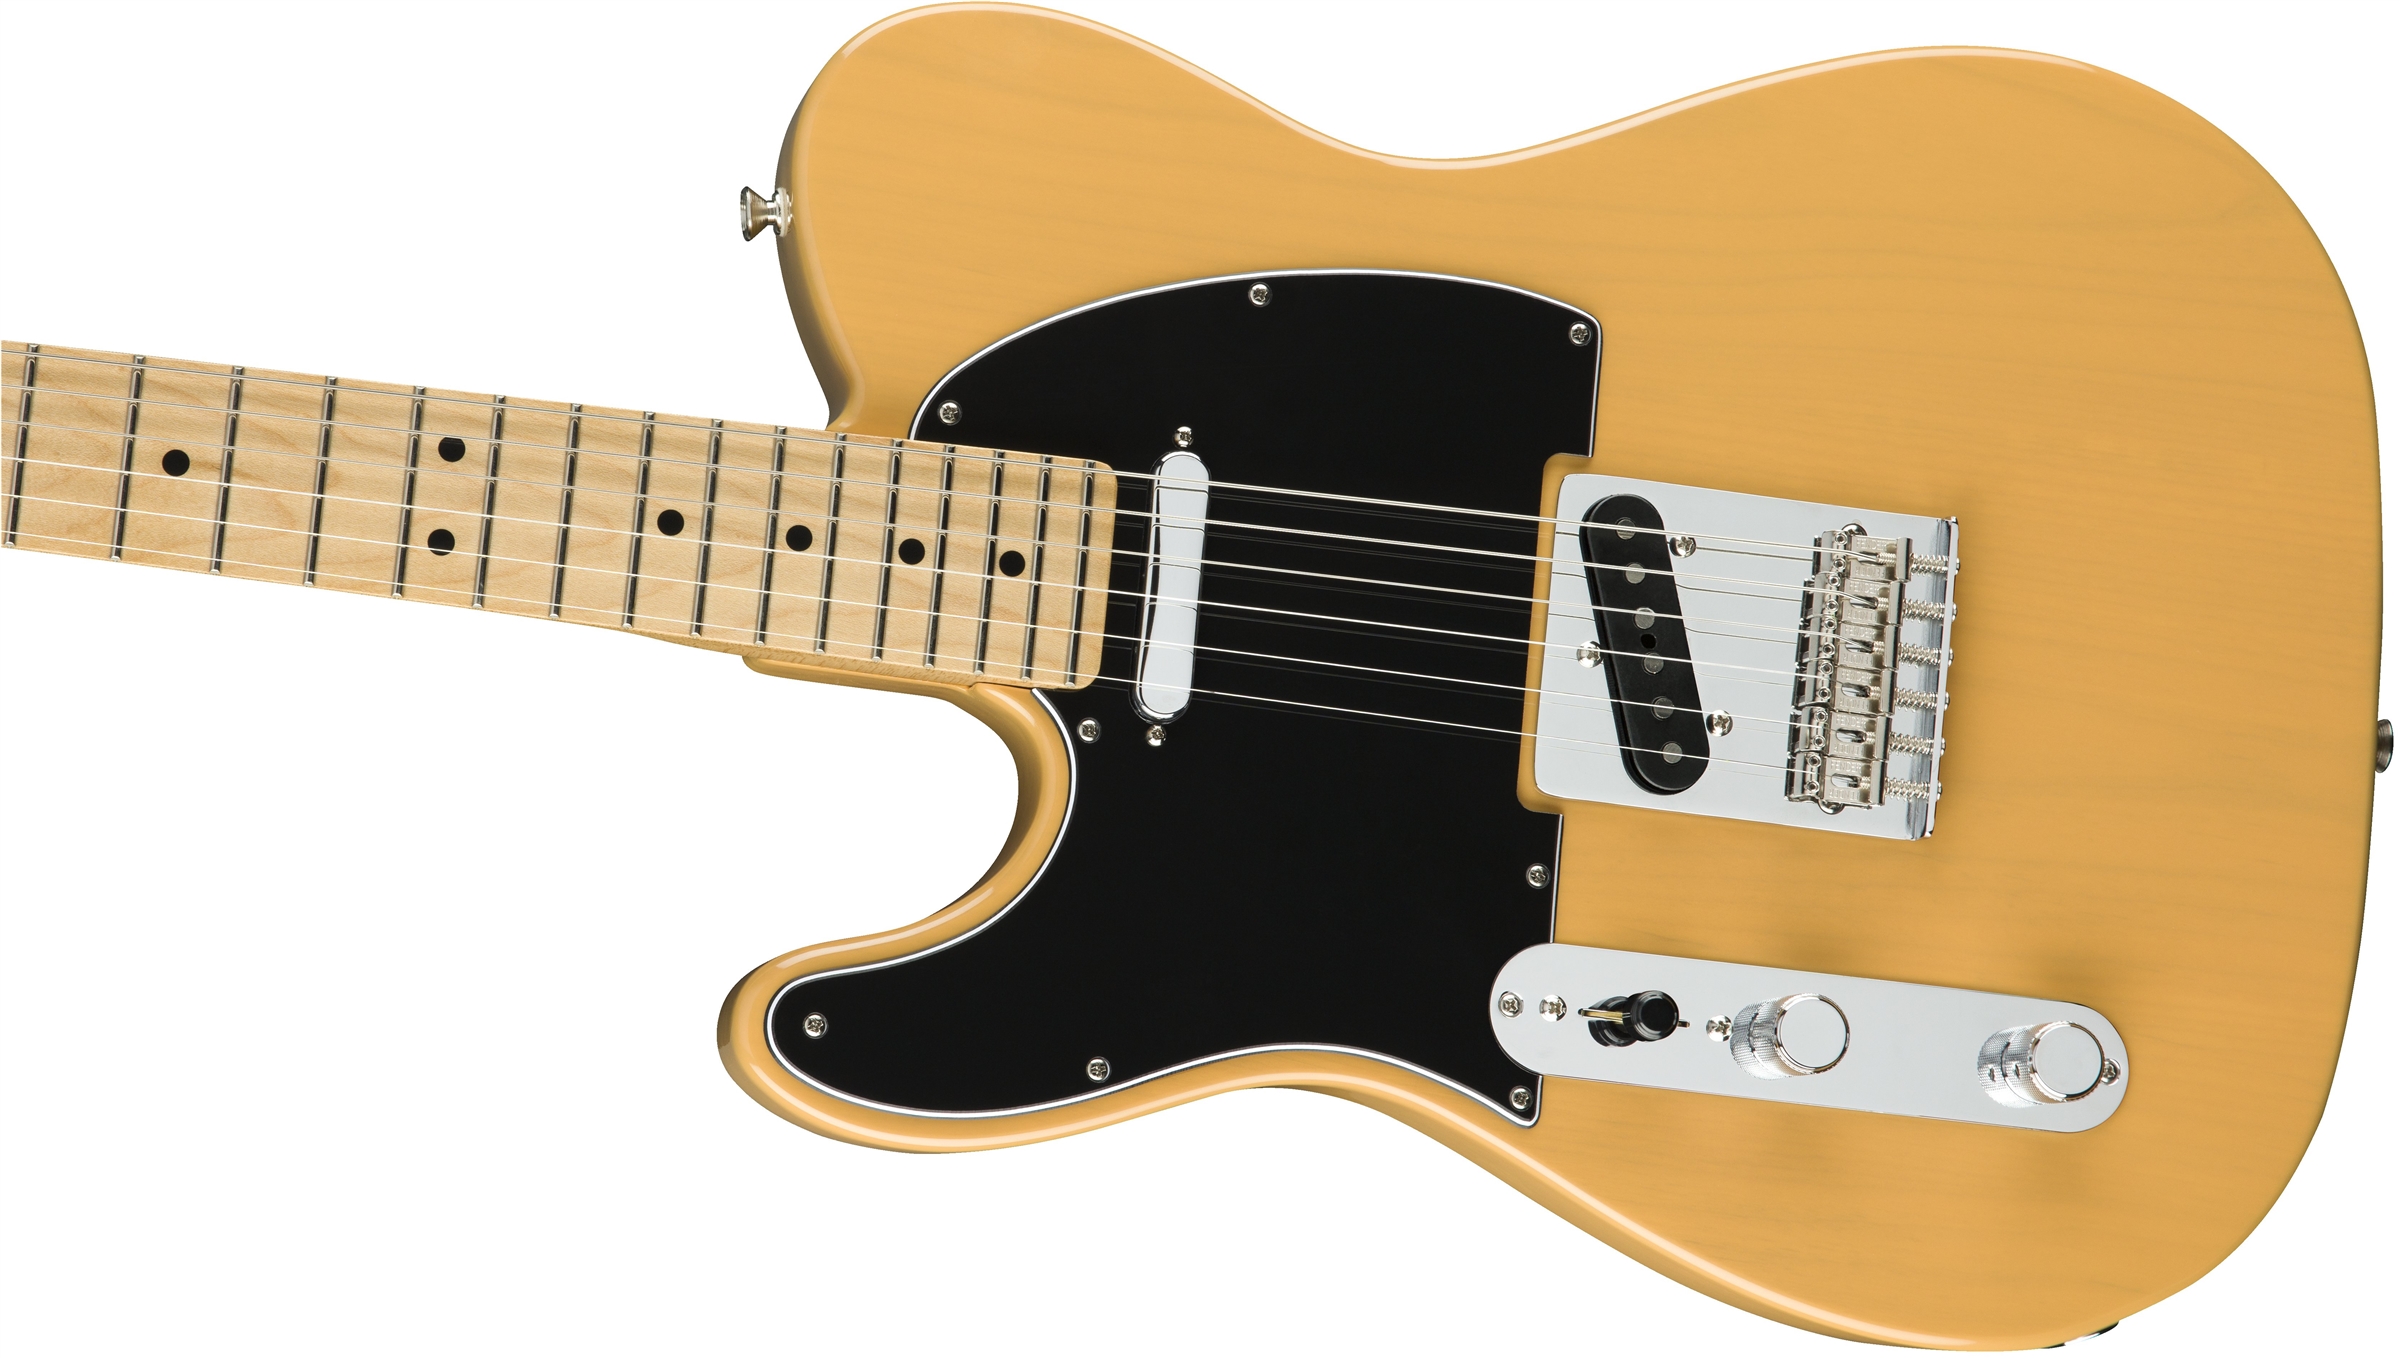 Fender Tele Player Lh Gaucher Mex 2s Mn - Butterscotch Blonde - Linkshandige elektrische gitaar - Variation 3